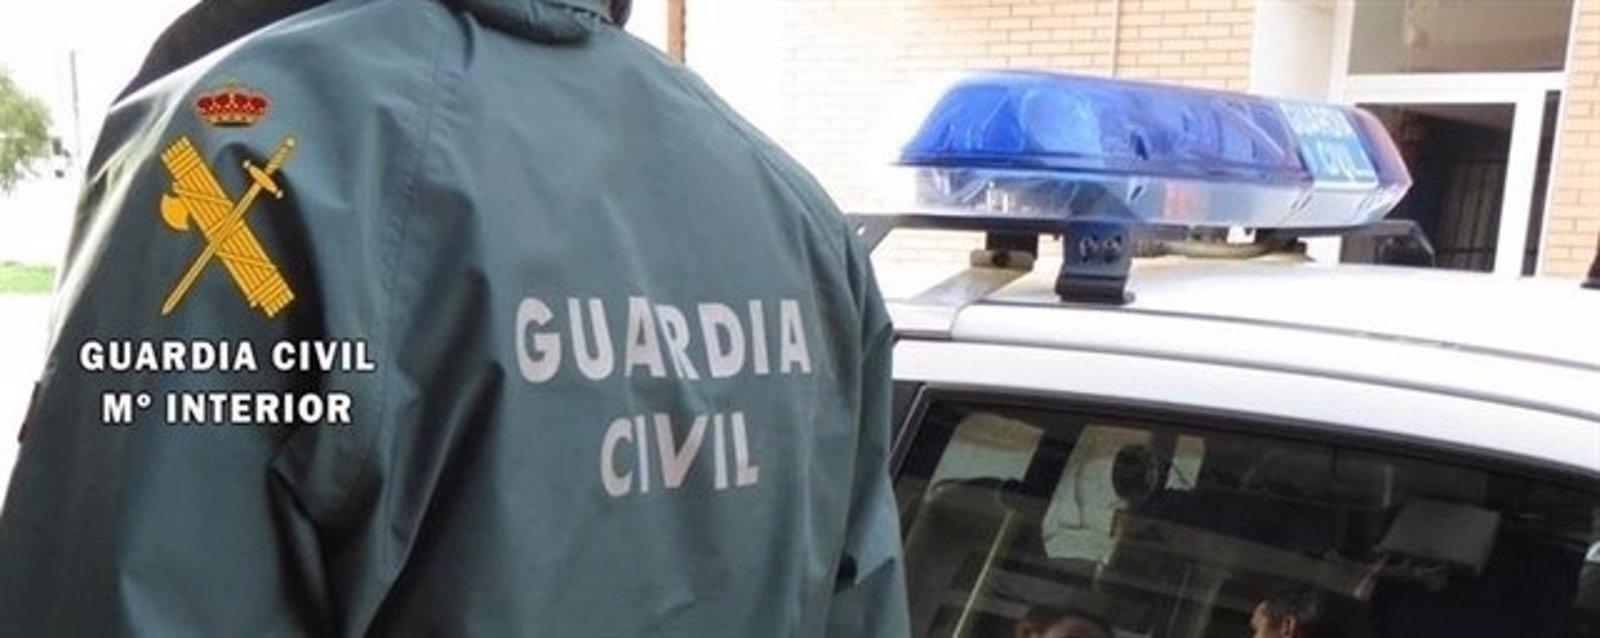 La Guardia Civil desaloja a unos okupas de una vivienda de Perales de Tajuña